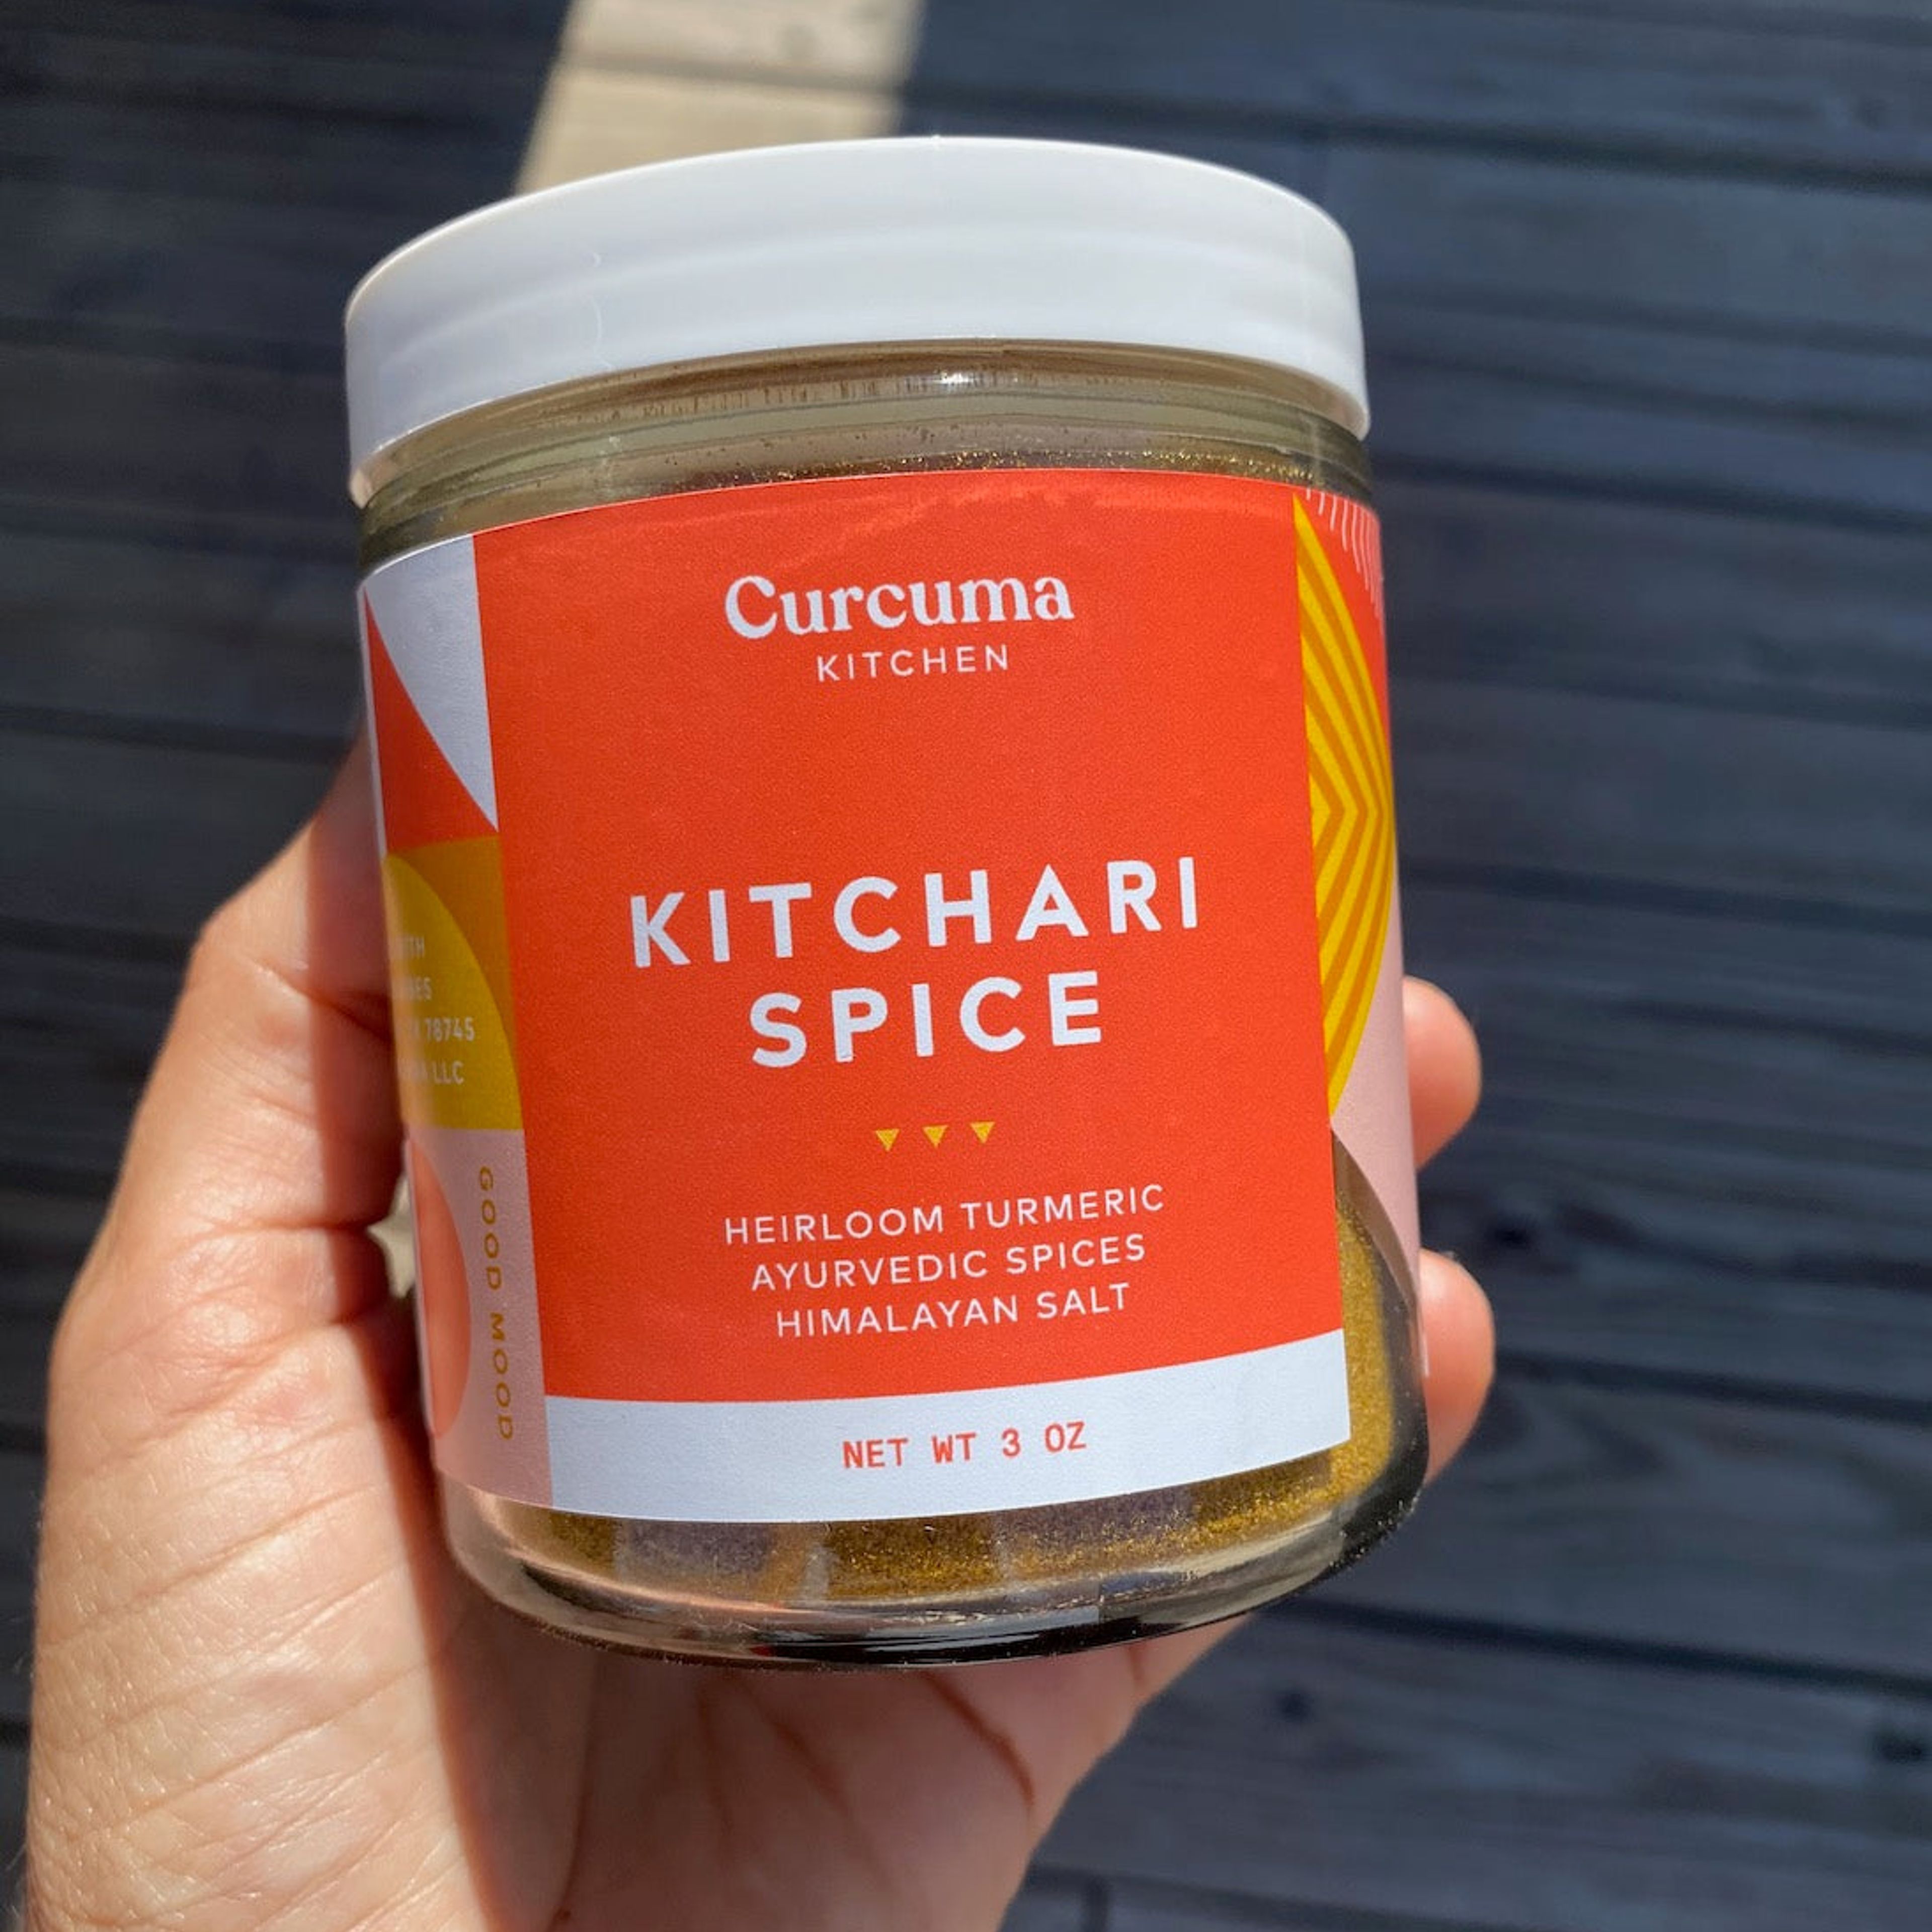 Kitchari Spice